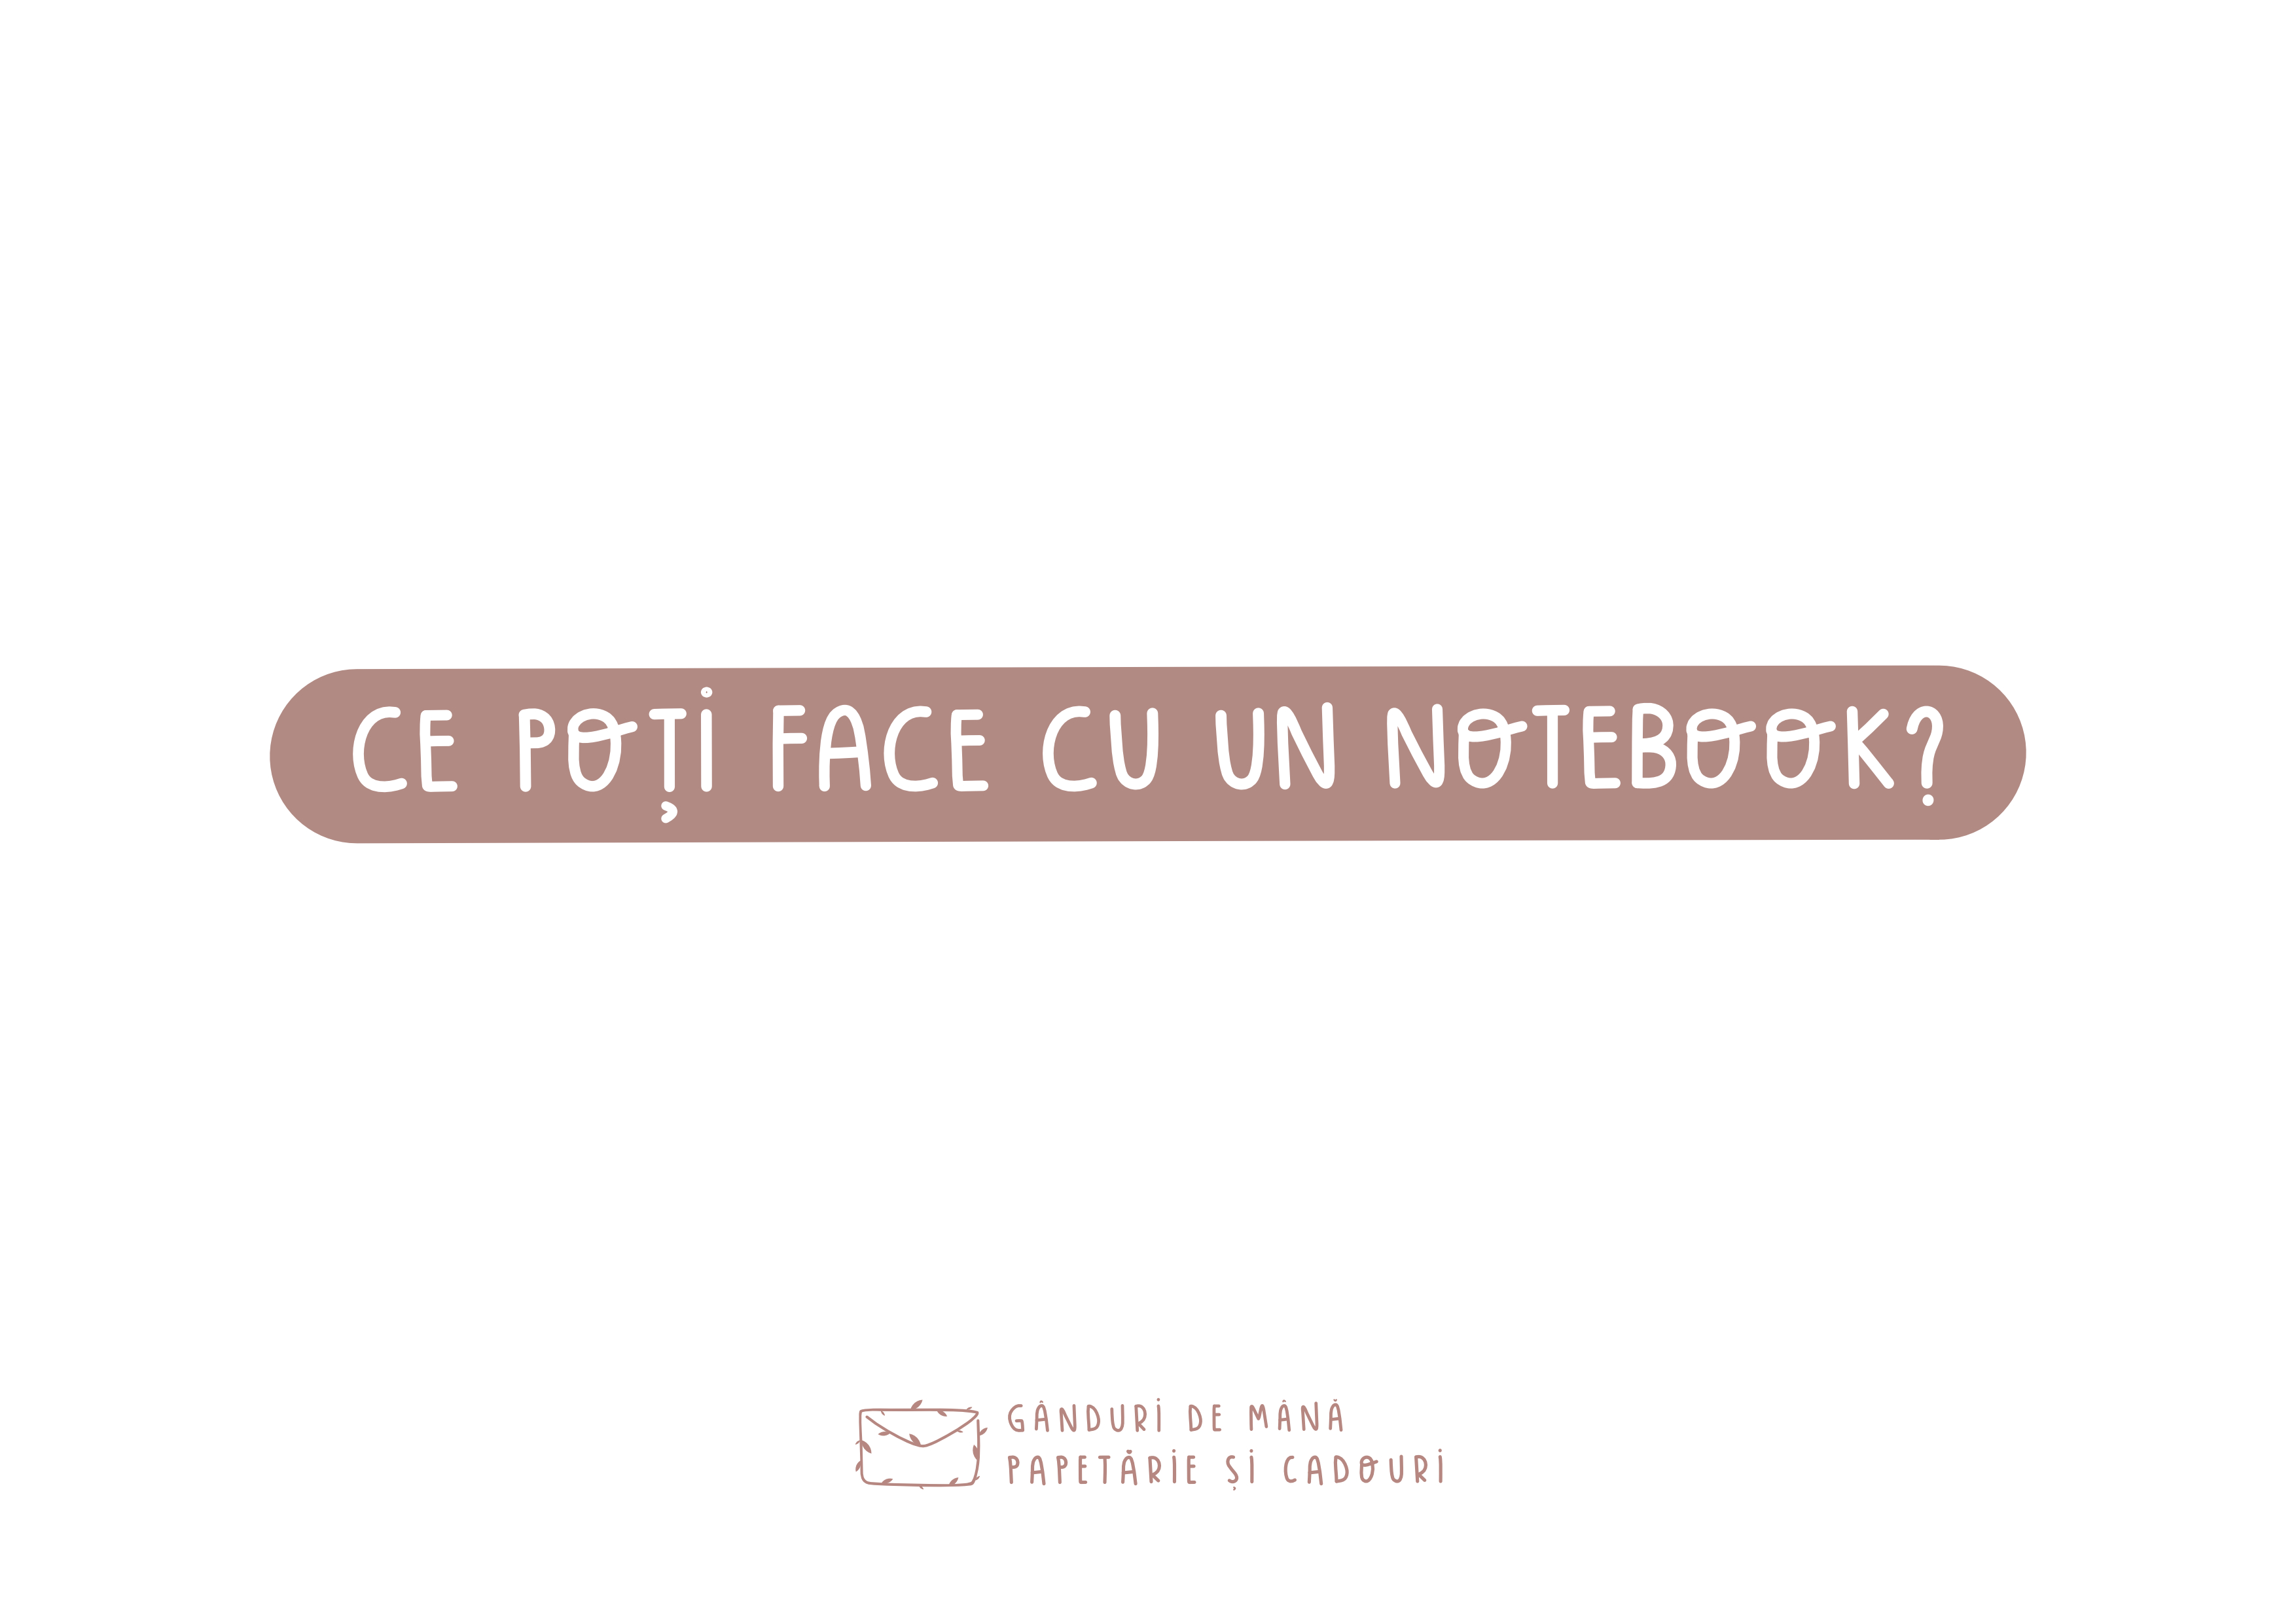 Ce poți face cu un notebook?